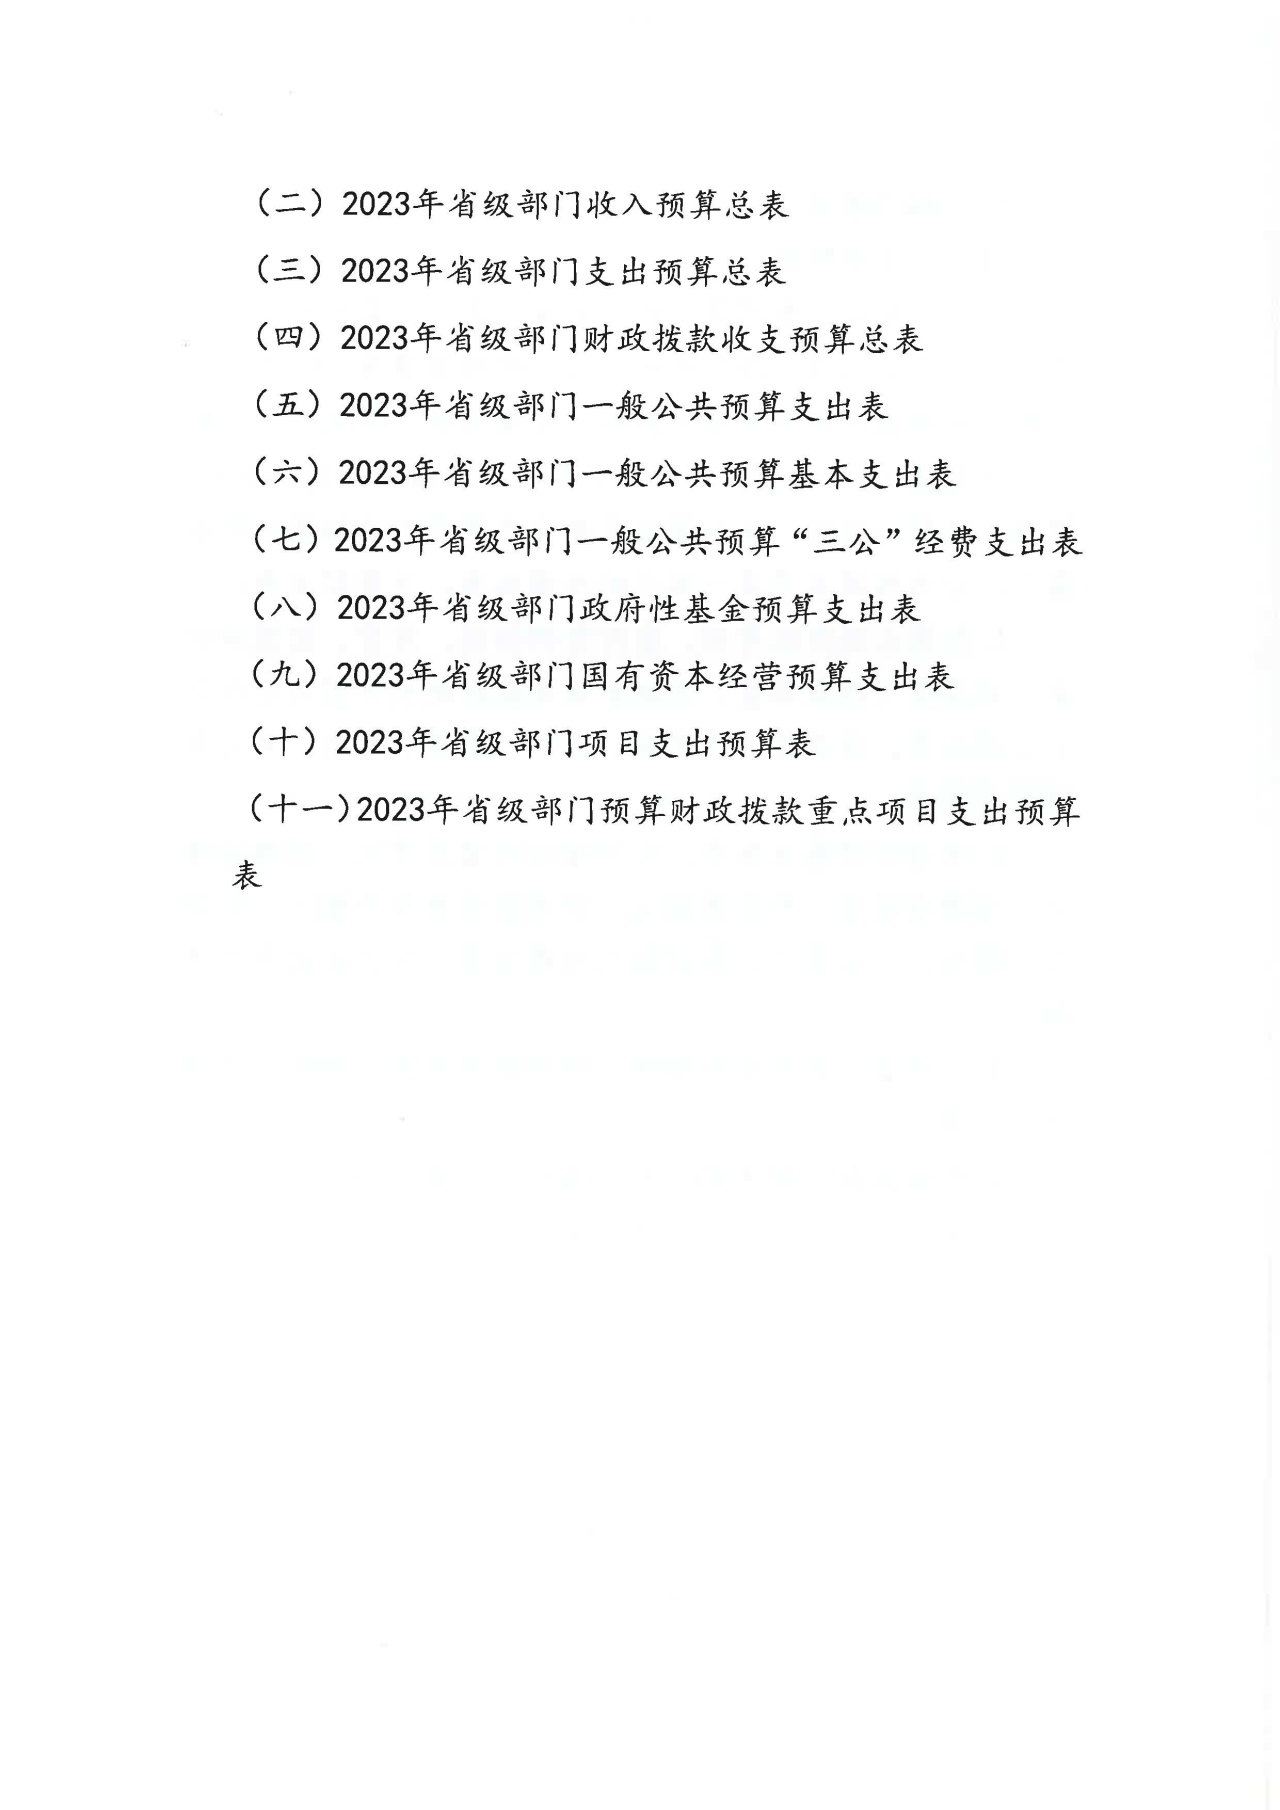 浙江日报报业集团2023年部门预算公开_页面_03.jpg